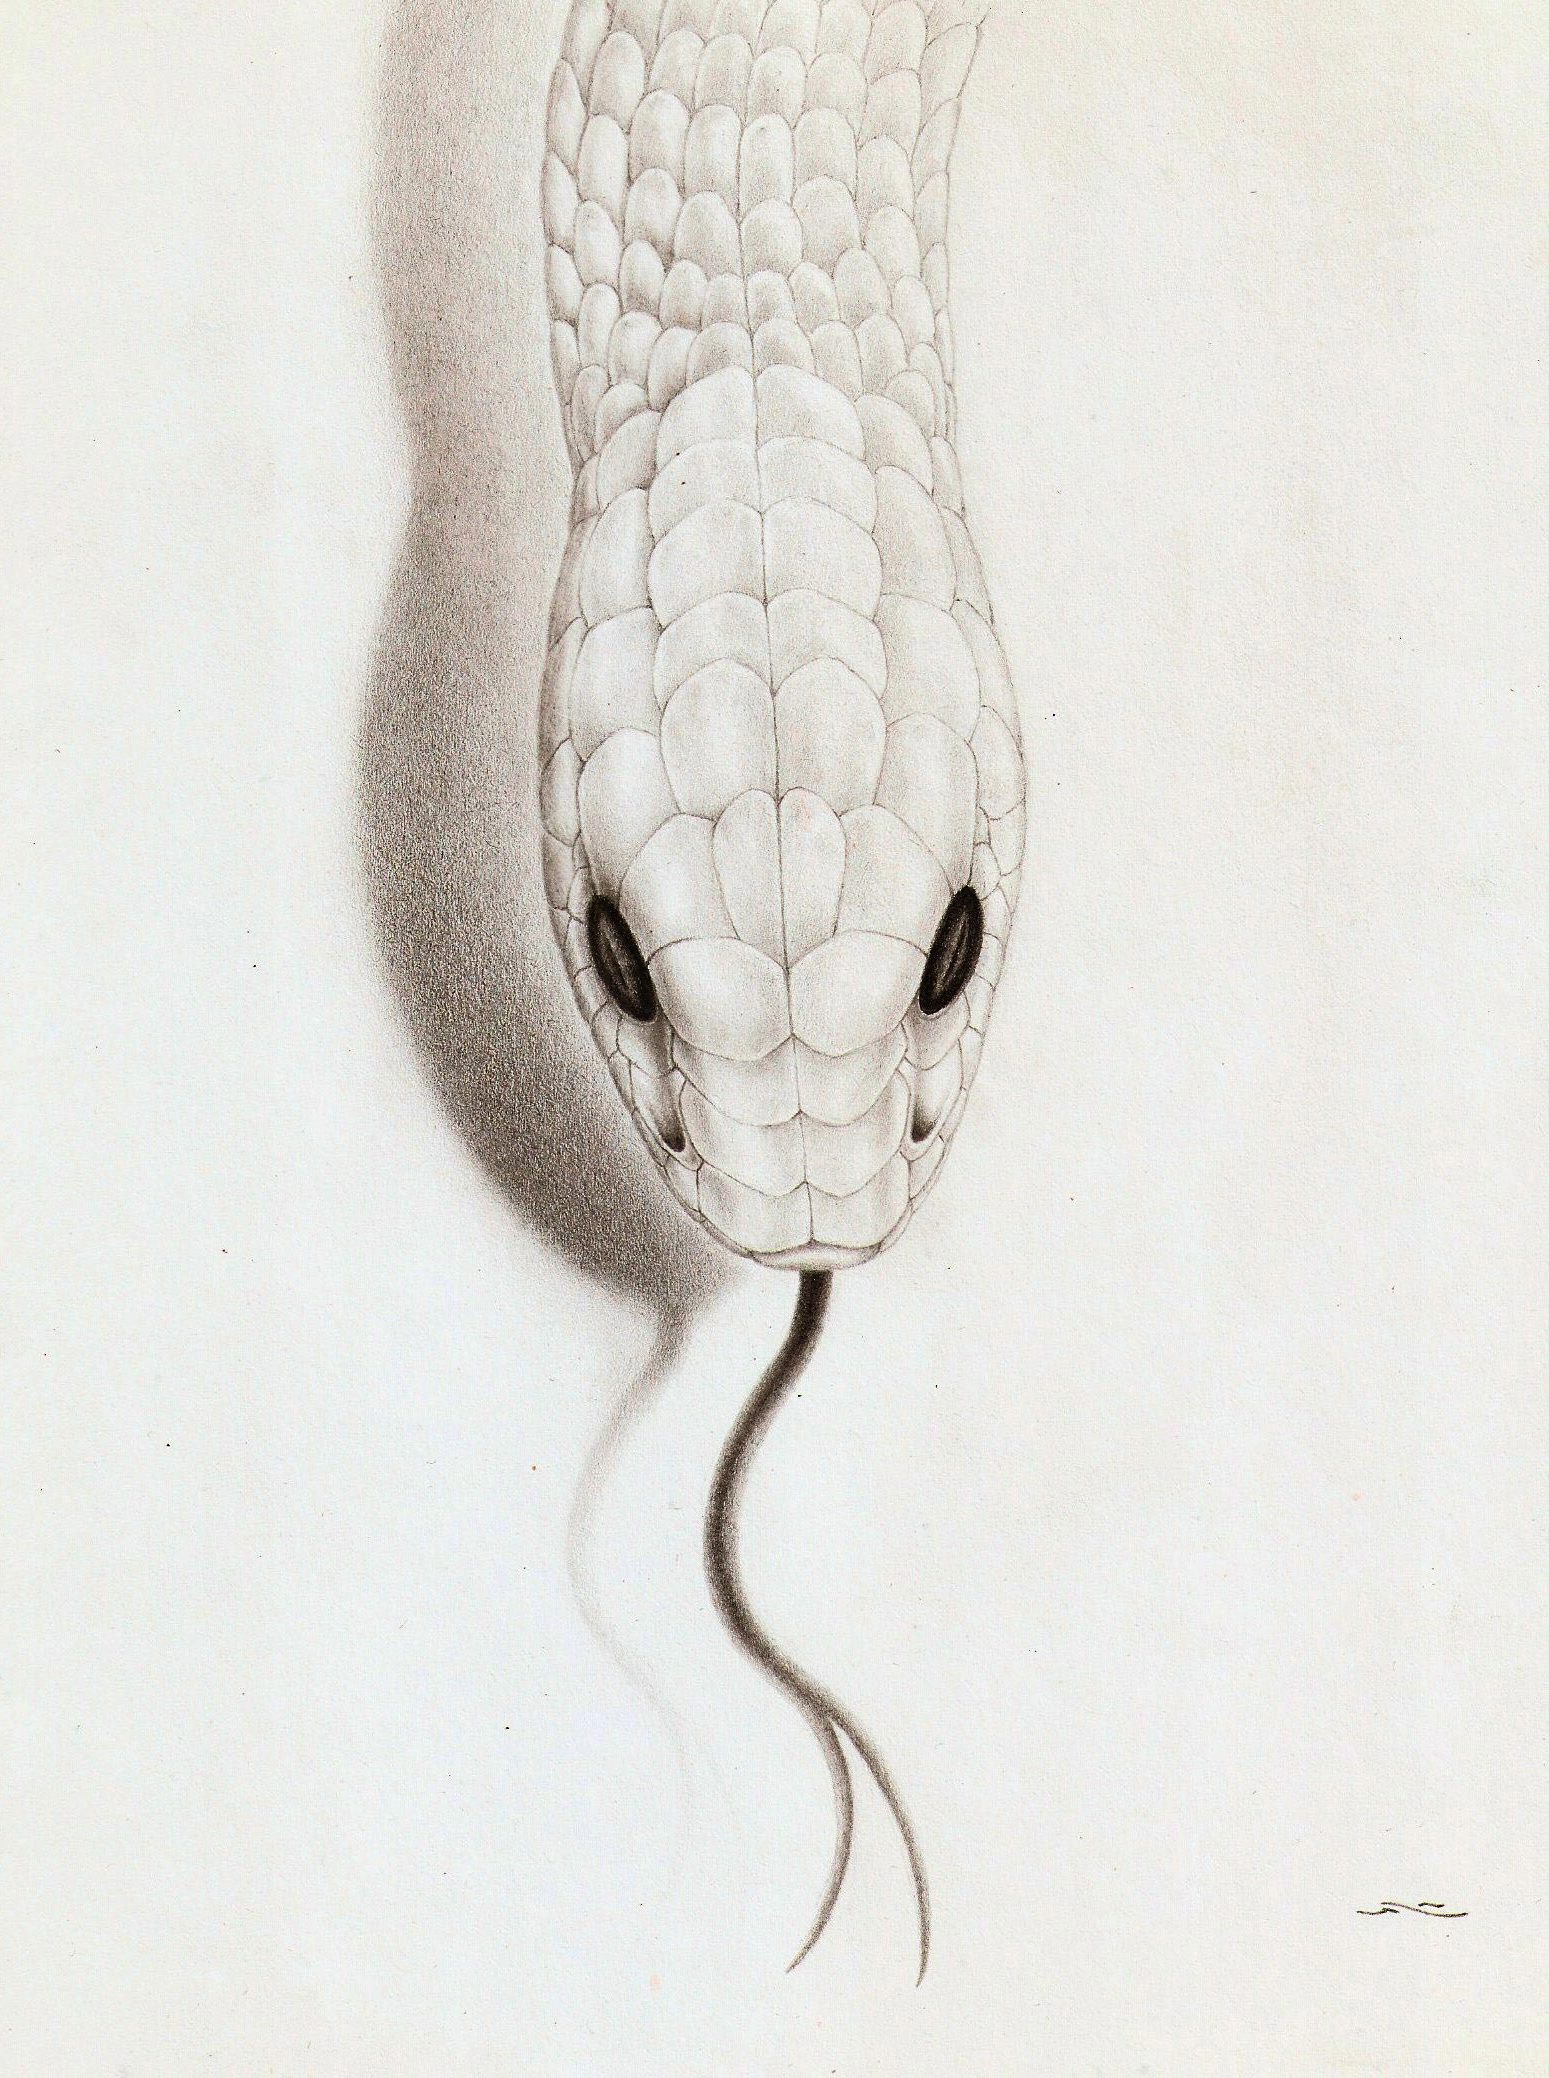 Rattlesnake Drawing Stunning Sketch